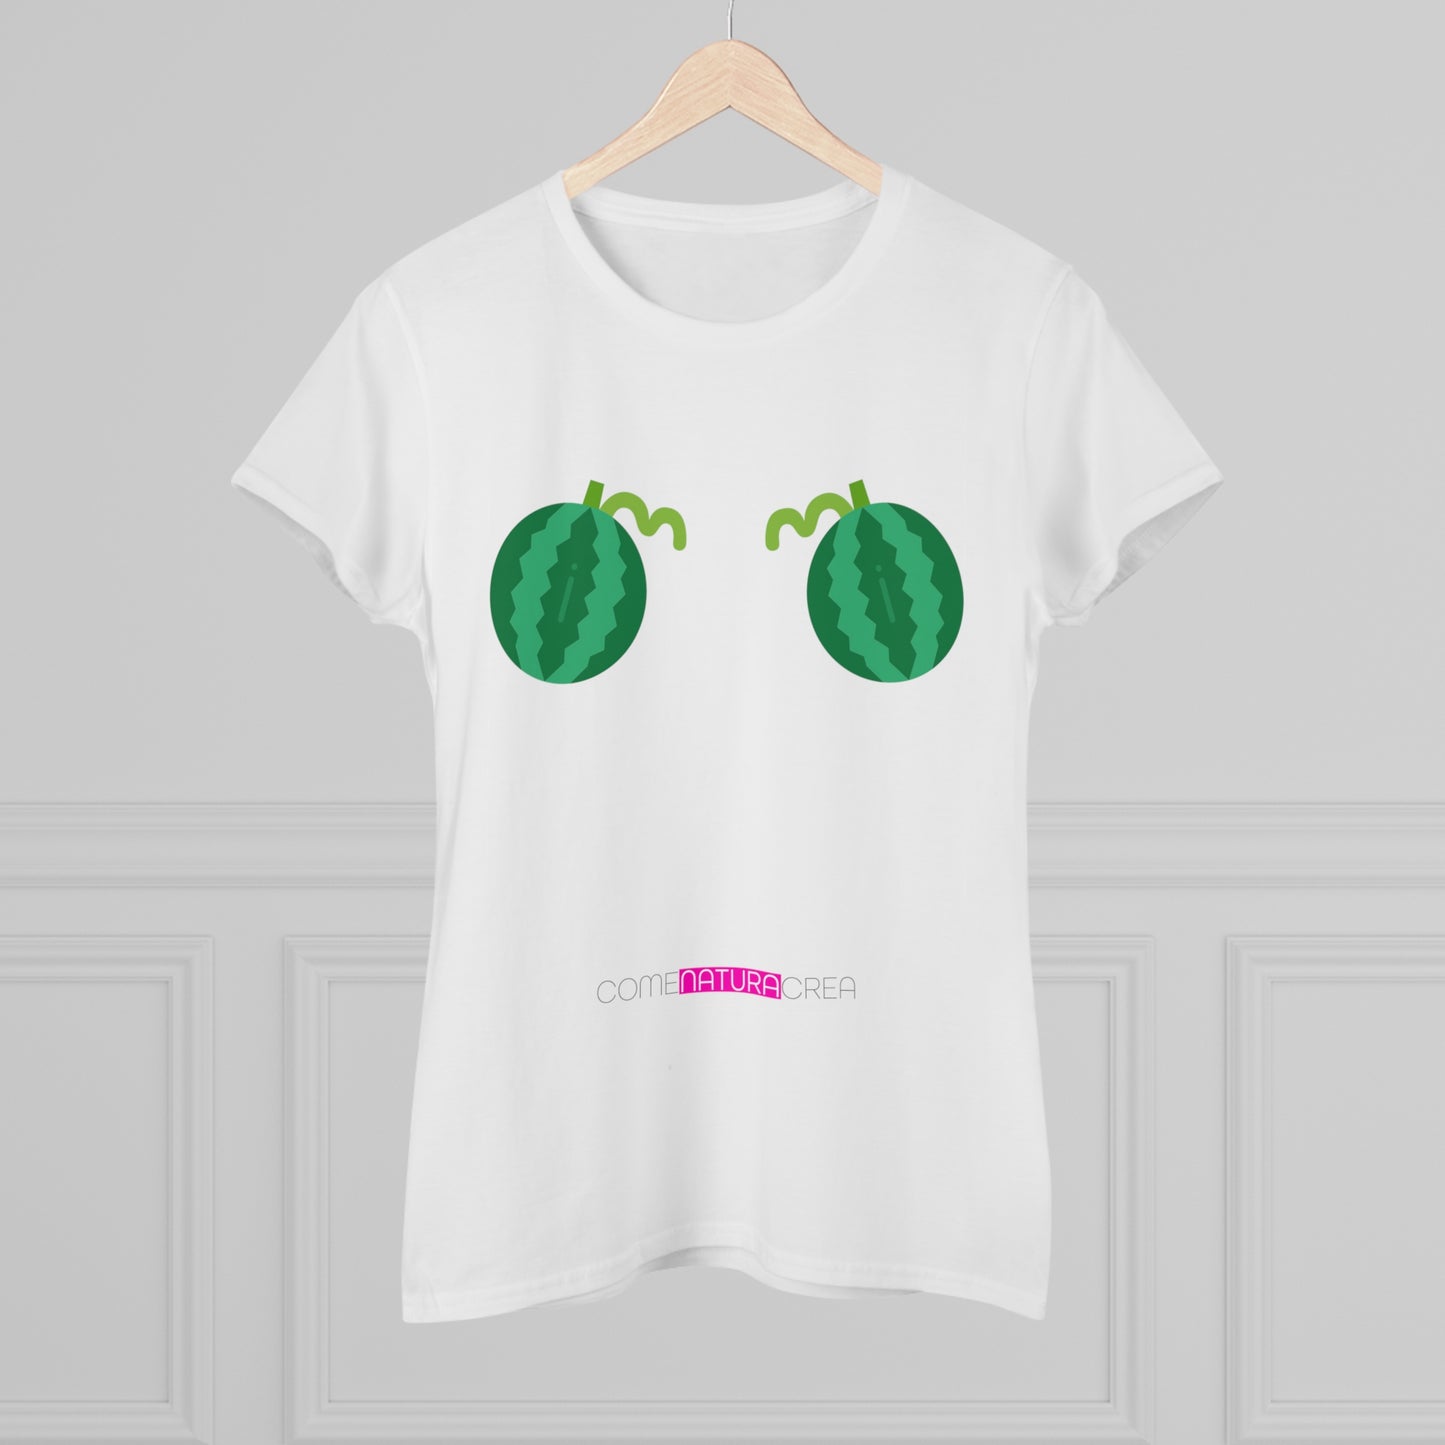 COME NATURA CREA - Tshirt premium - Meloni